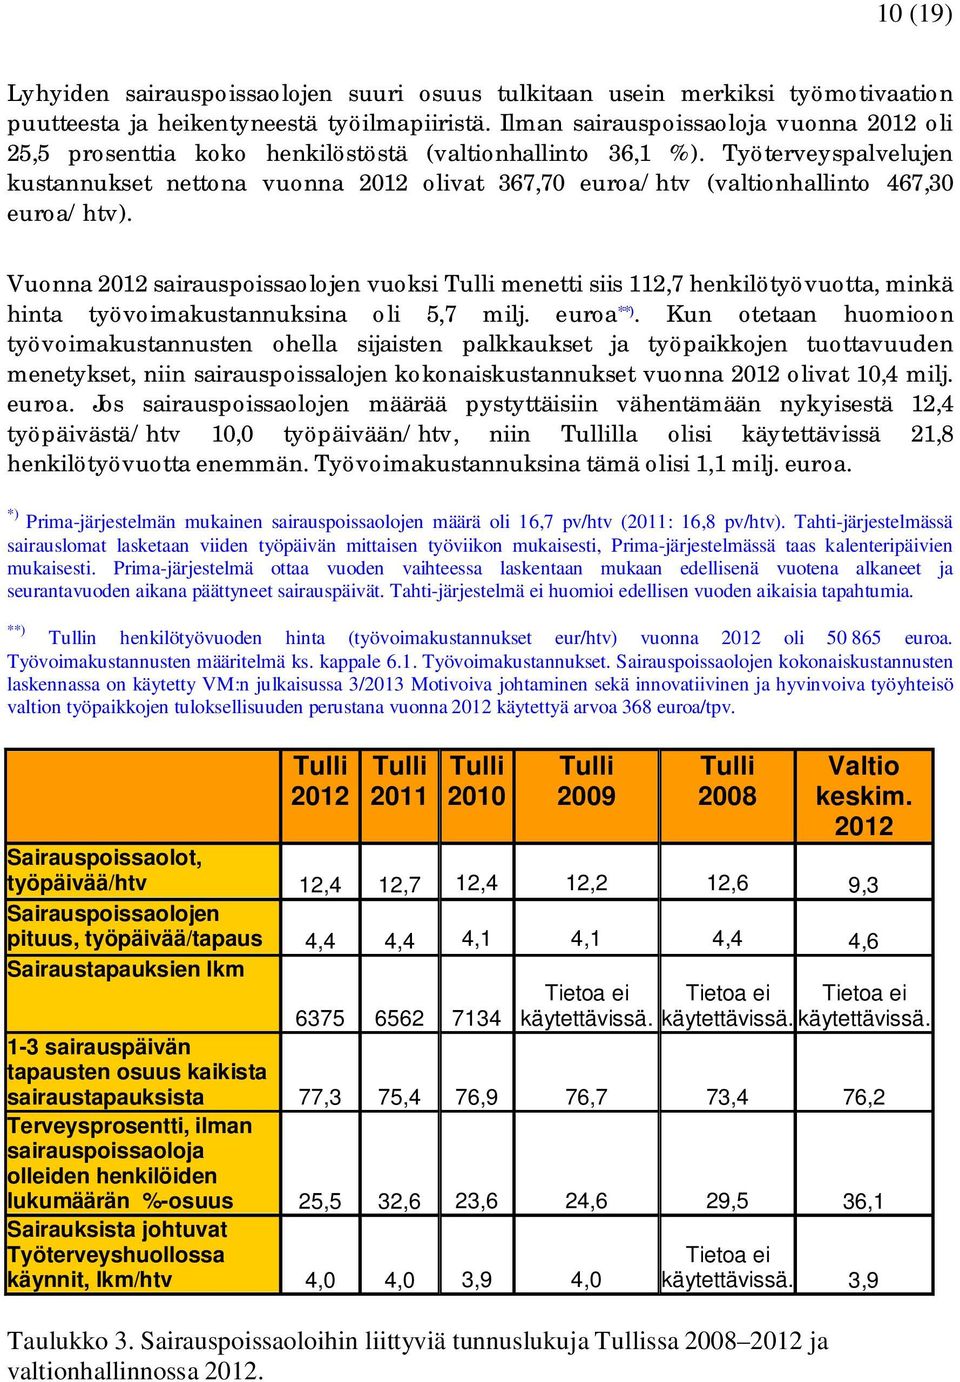 Työterveyspalvelujen kustannukset nettona vuonna 2012 olivat 367,70 euroa/htv (valtionhallinto 467,30 euroa/htv).